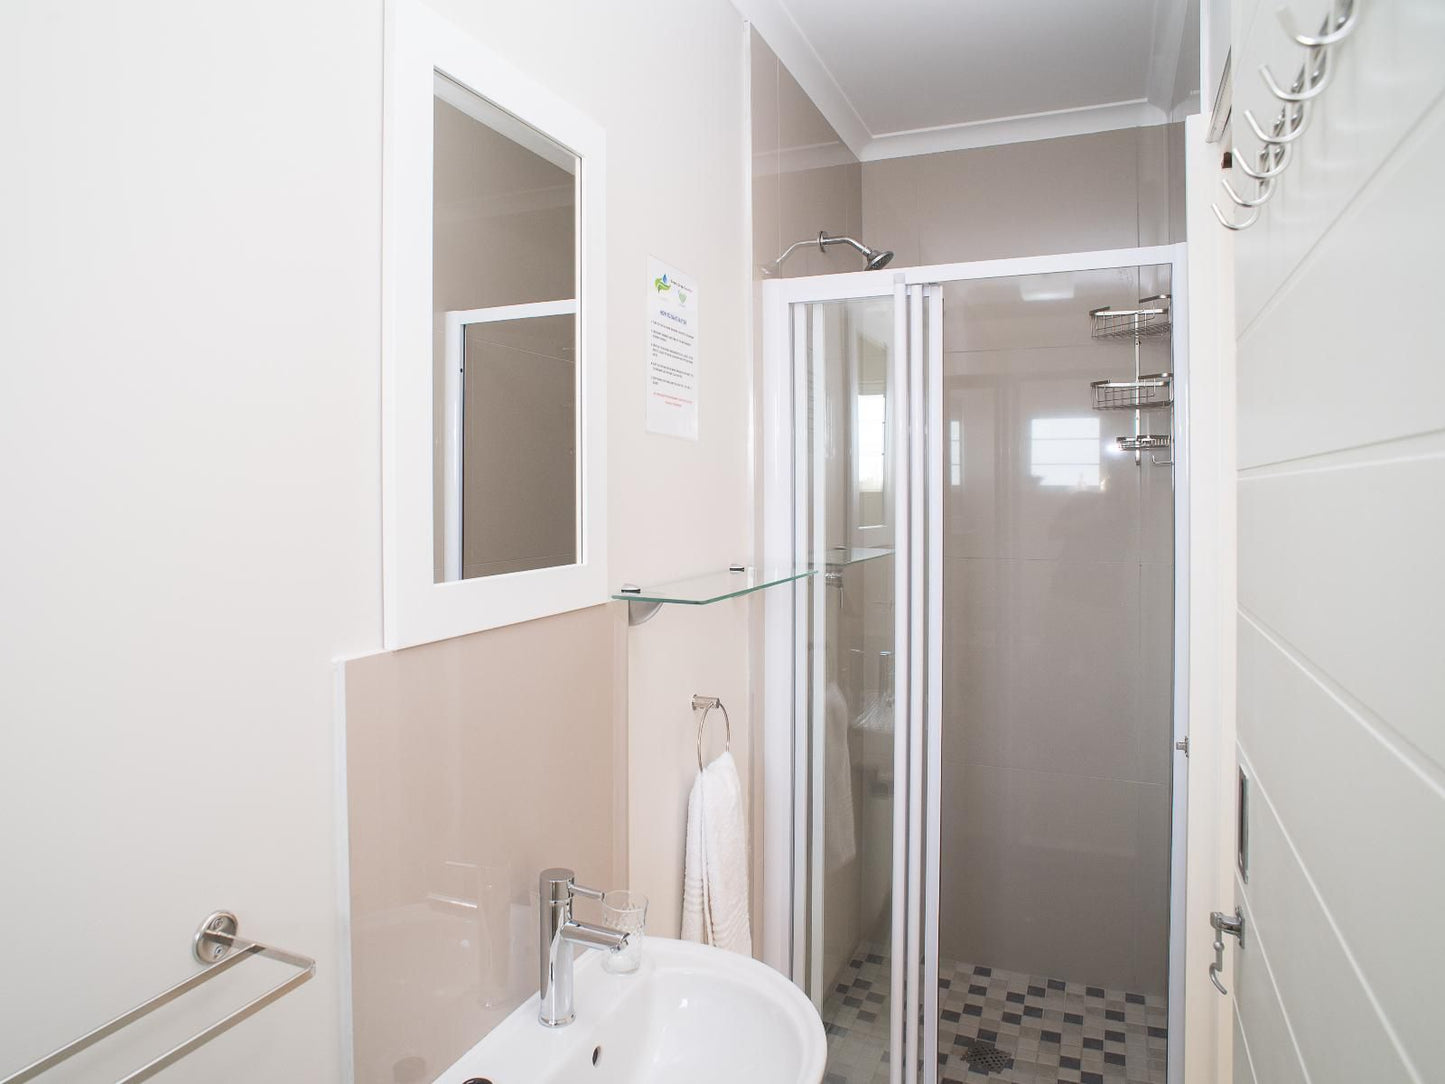 Westwood Skye Westville Durban Kwazulu Natal South Africa Unsaturated, Bathroom